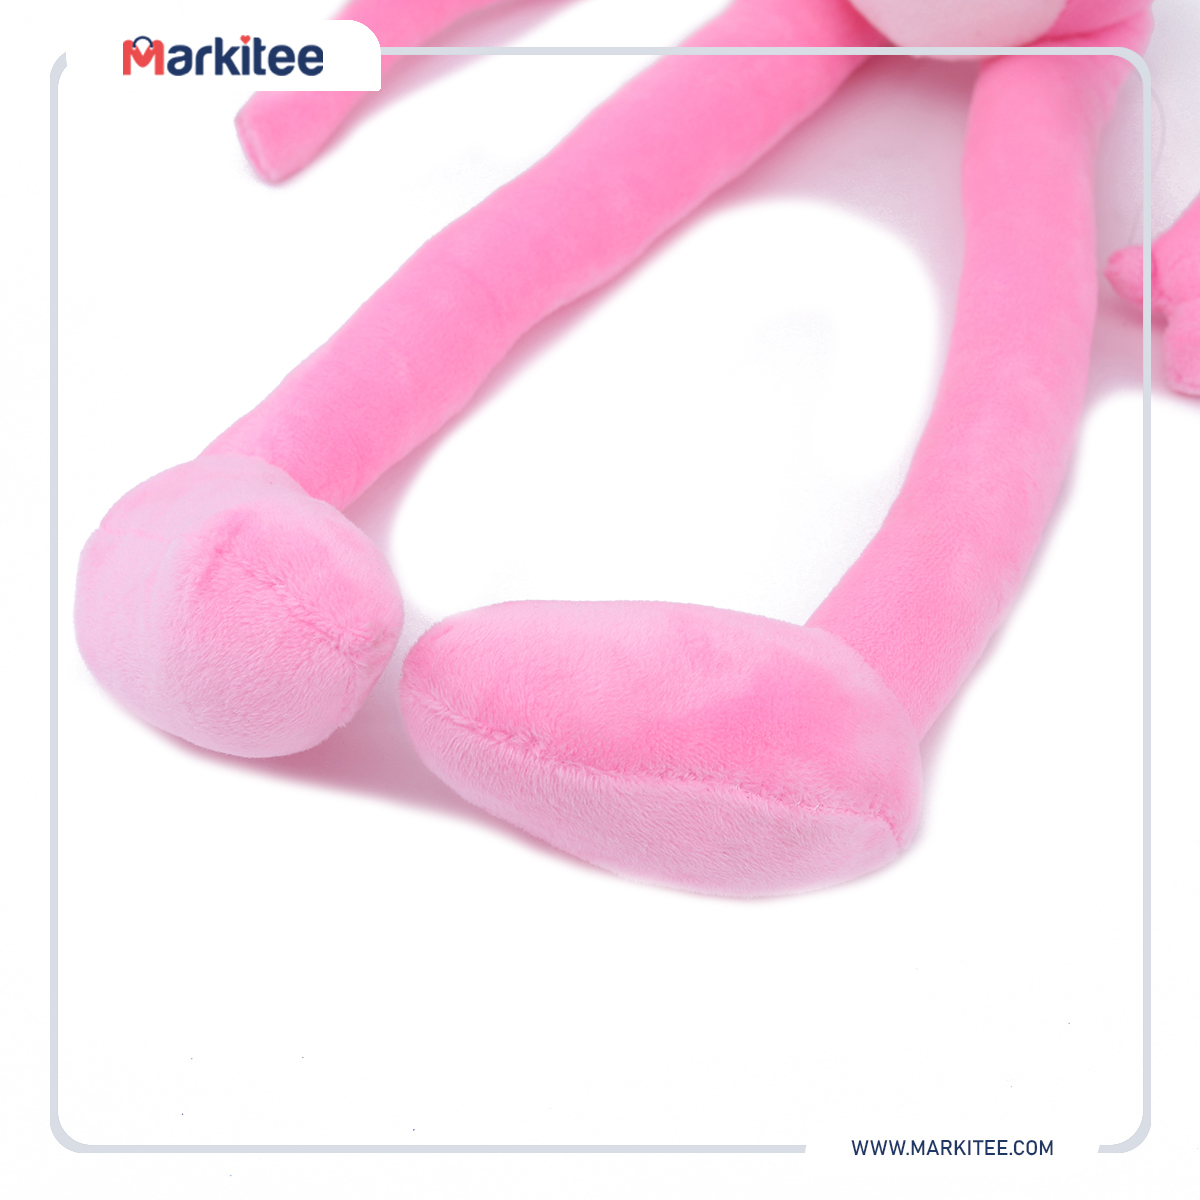 ماركيتي-markitee-20220626111832291_Markitee-toys-ty-221(1).jpg